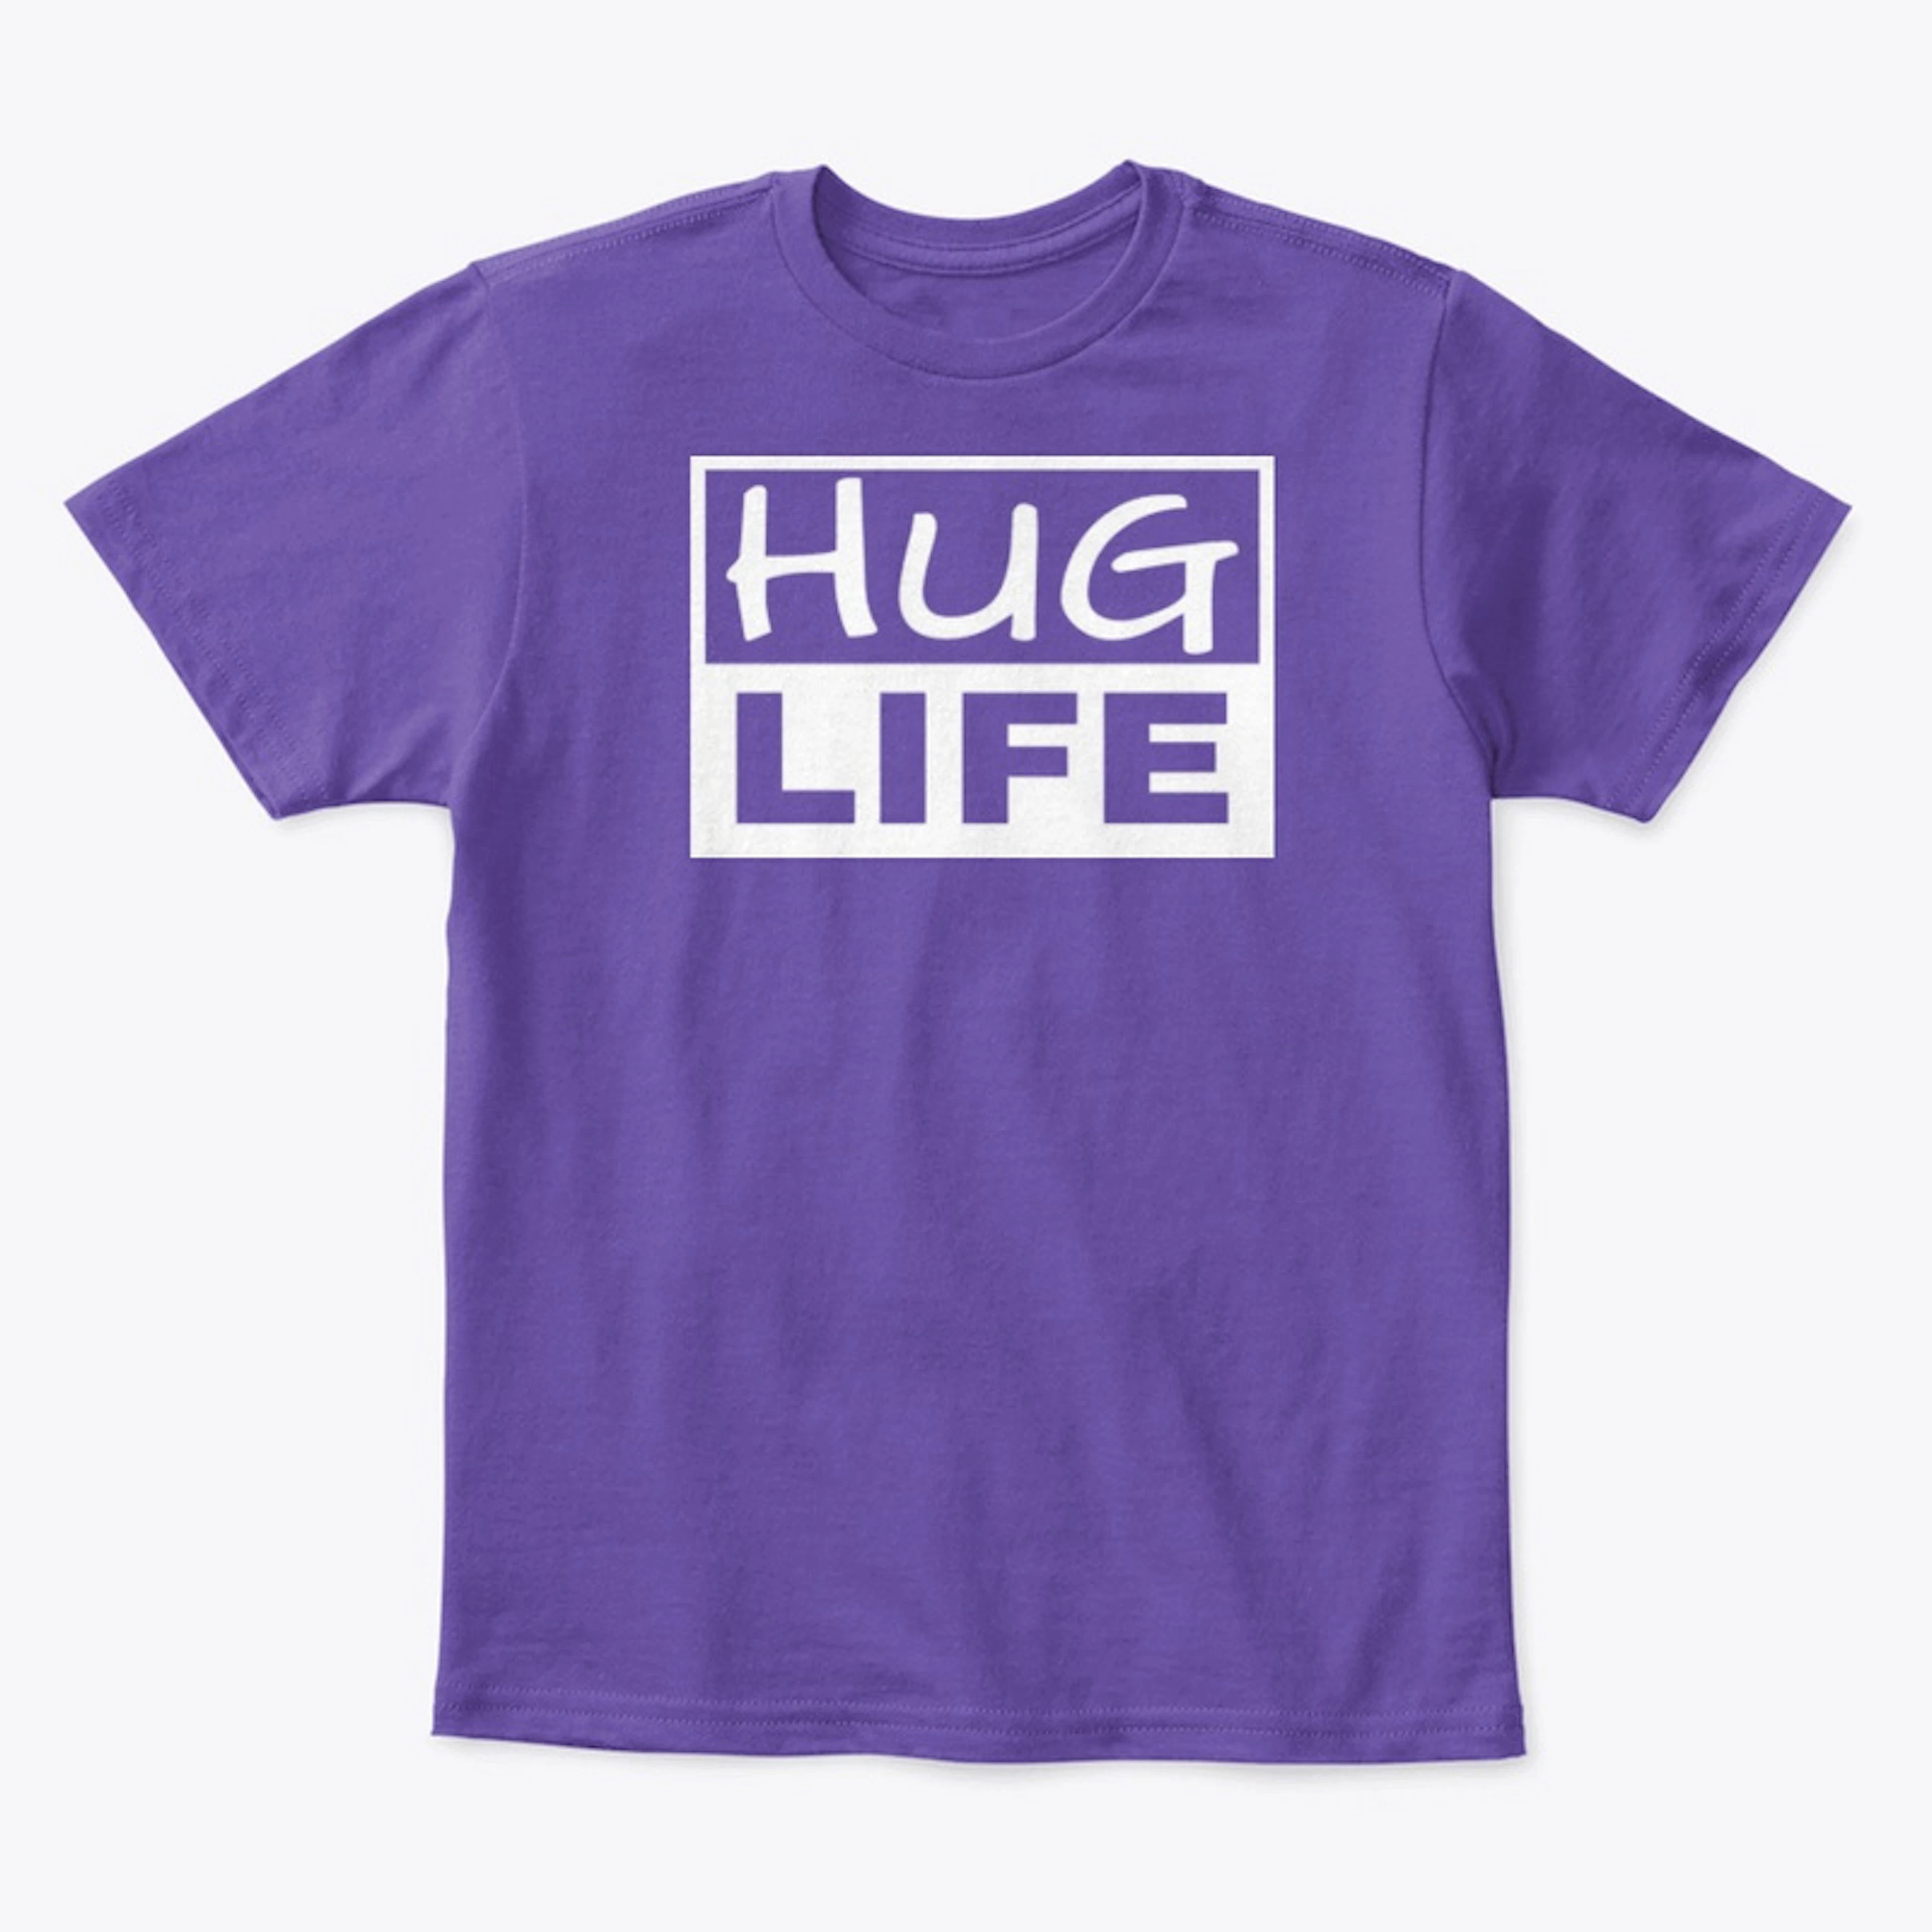 Hug Life Shirt